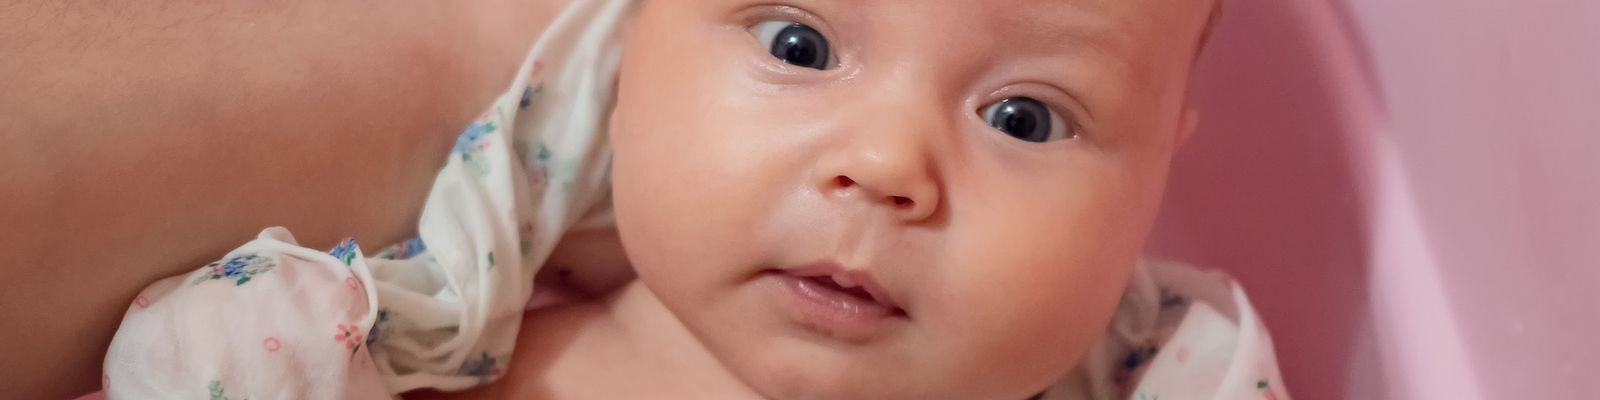 Les bienfaits des bains enveloppés pour les bébés